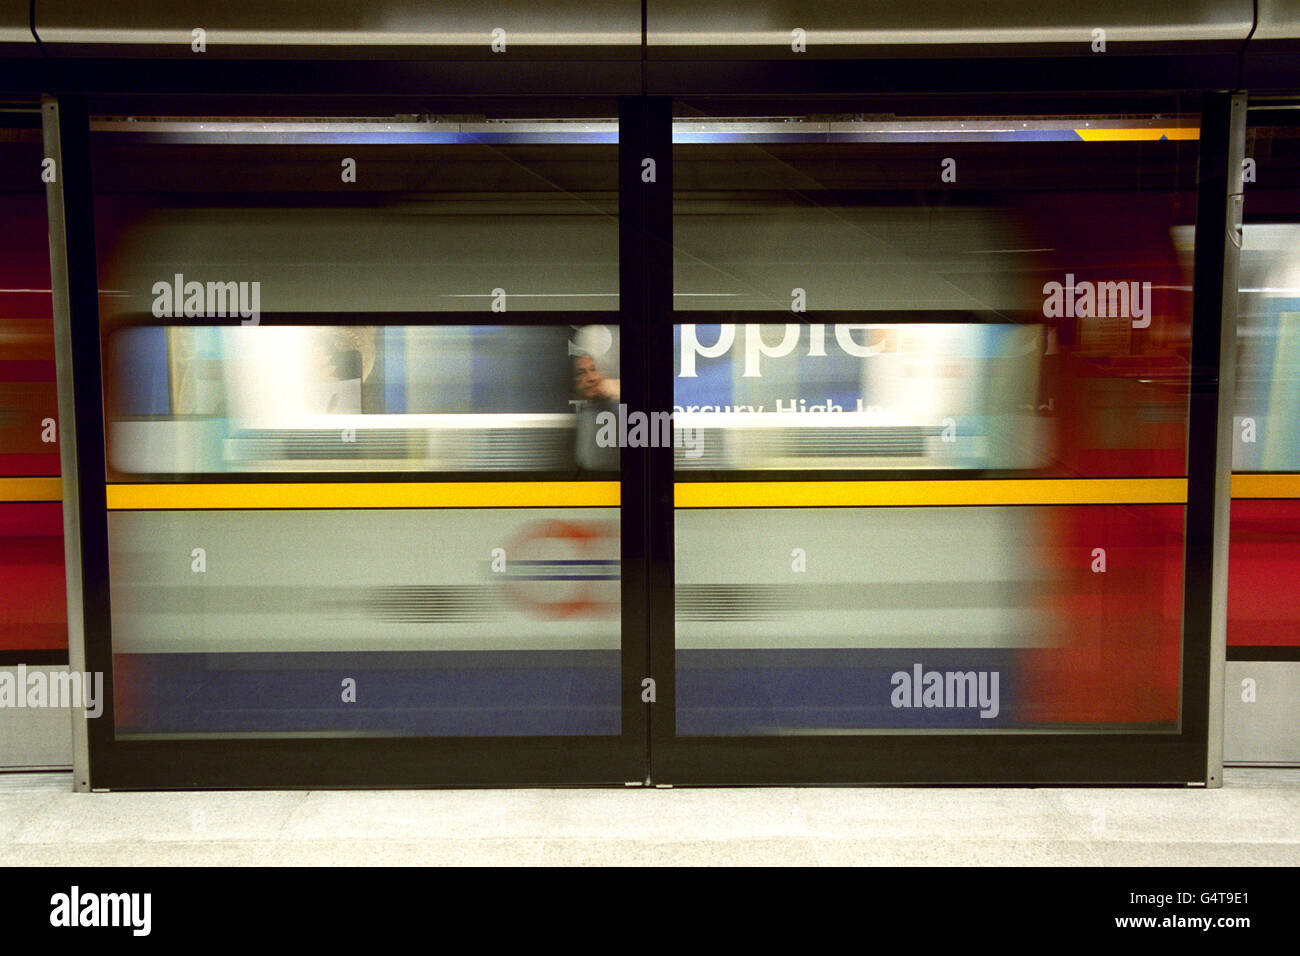 Ein Zug fährt durch Glasbarrieren, die auf den Bahnsteigen der Canary Wharf-U-Bahnstation installiert sind, die von den Architekten Fosters und Partners entworfen wurden und nun als Teil der Londoner U-Bahn-Erweiterung Jubilee eröffnet werden. Stockfoto